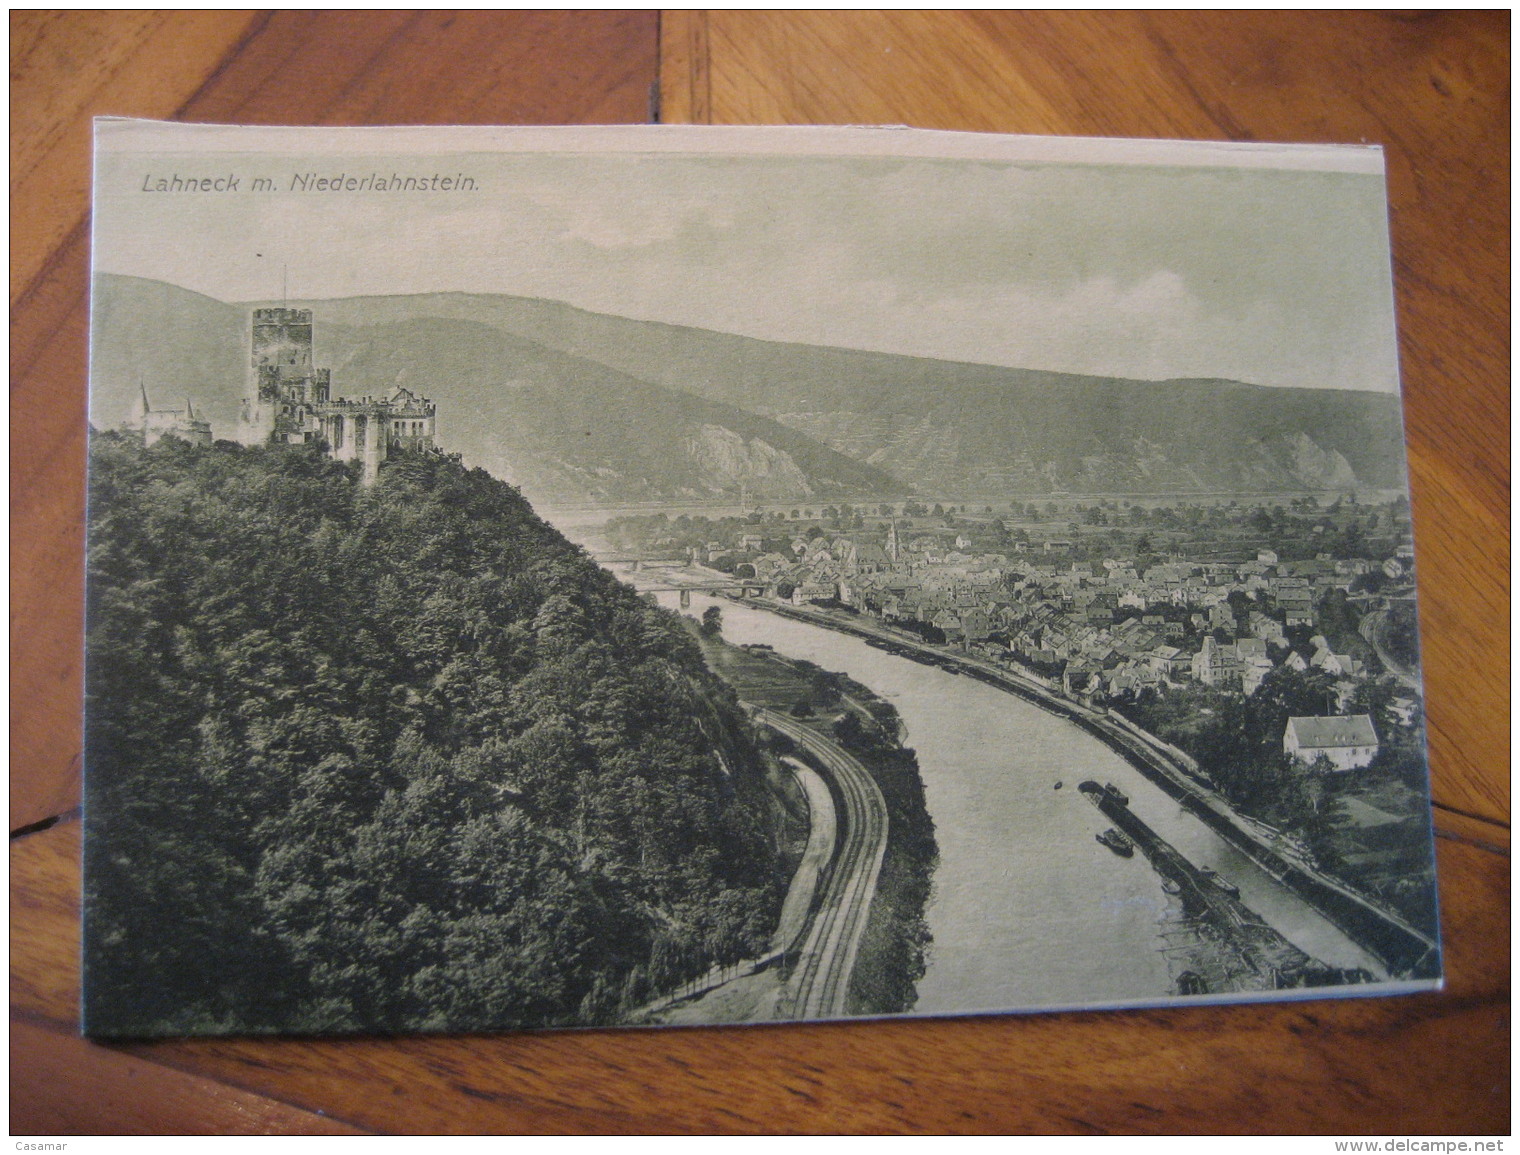 LAHNECK Burg Niederlahnstein Castle Post Card Lahnstein Rhineland Palatinate Koblenz Germany - Lahnstein